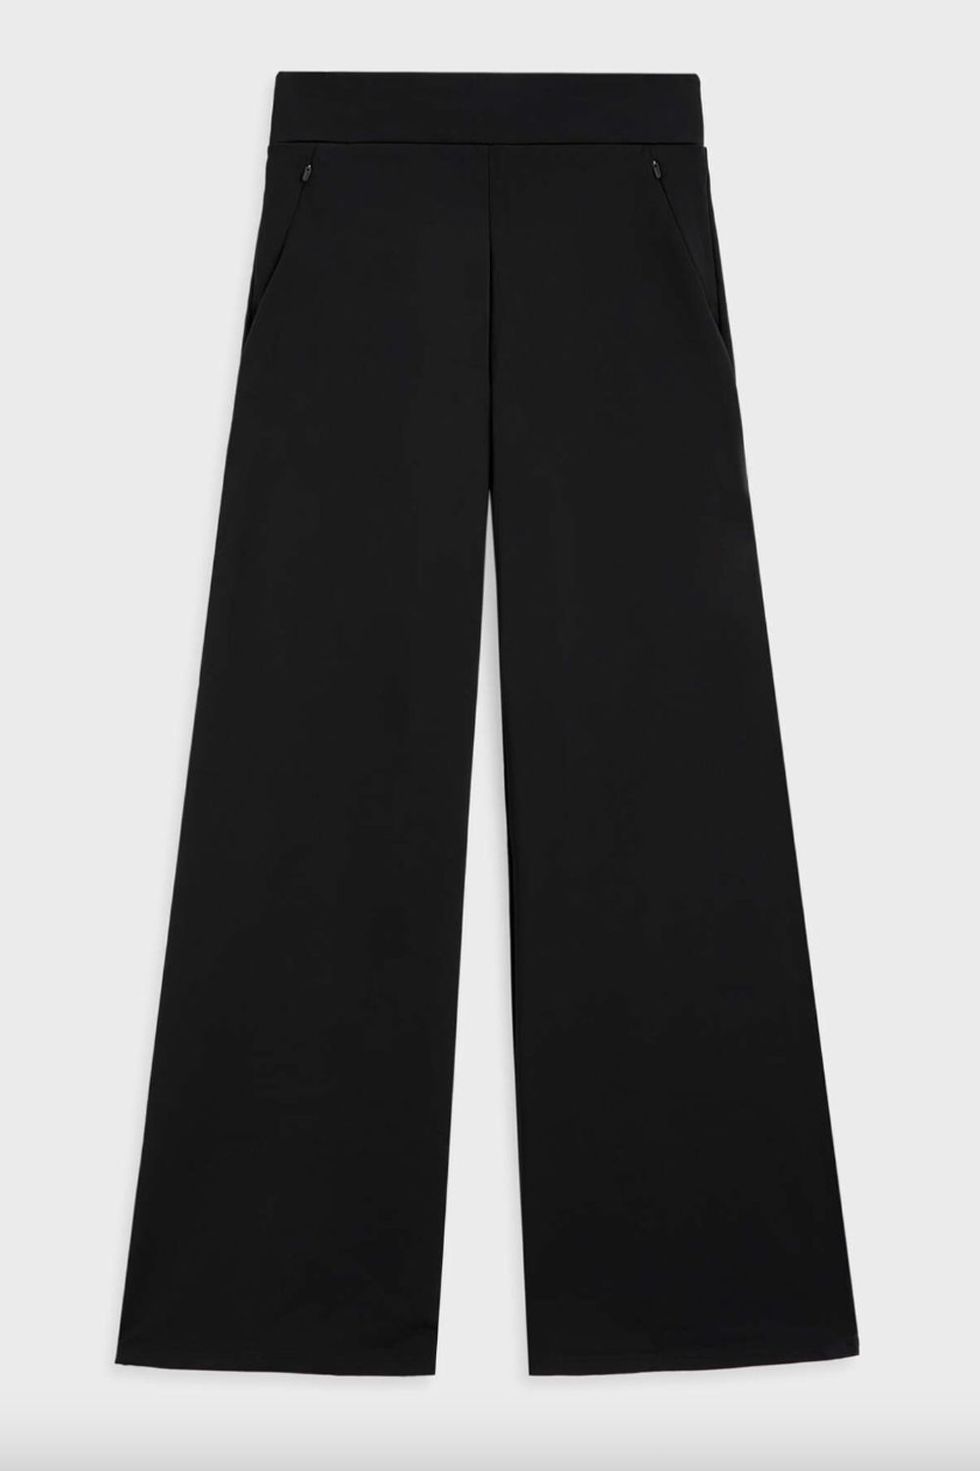 Pantalones negros de corte recto